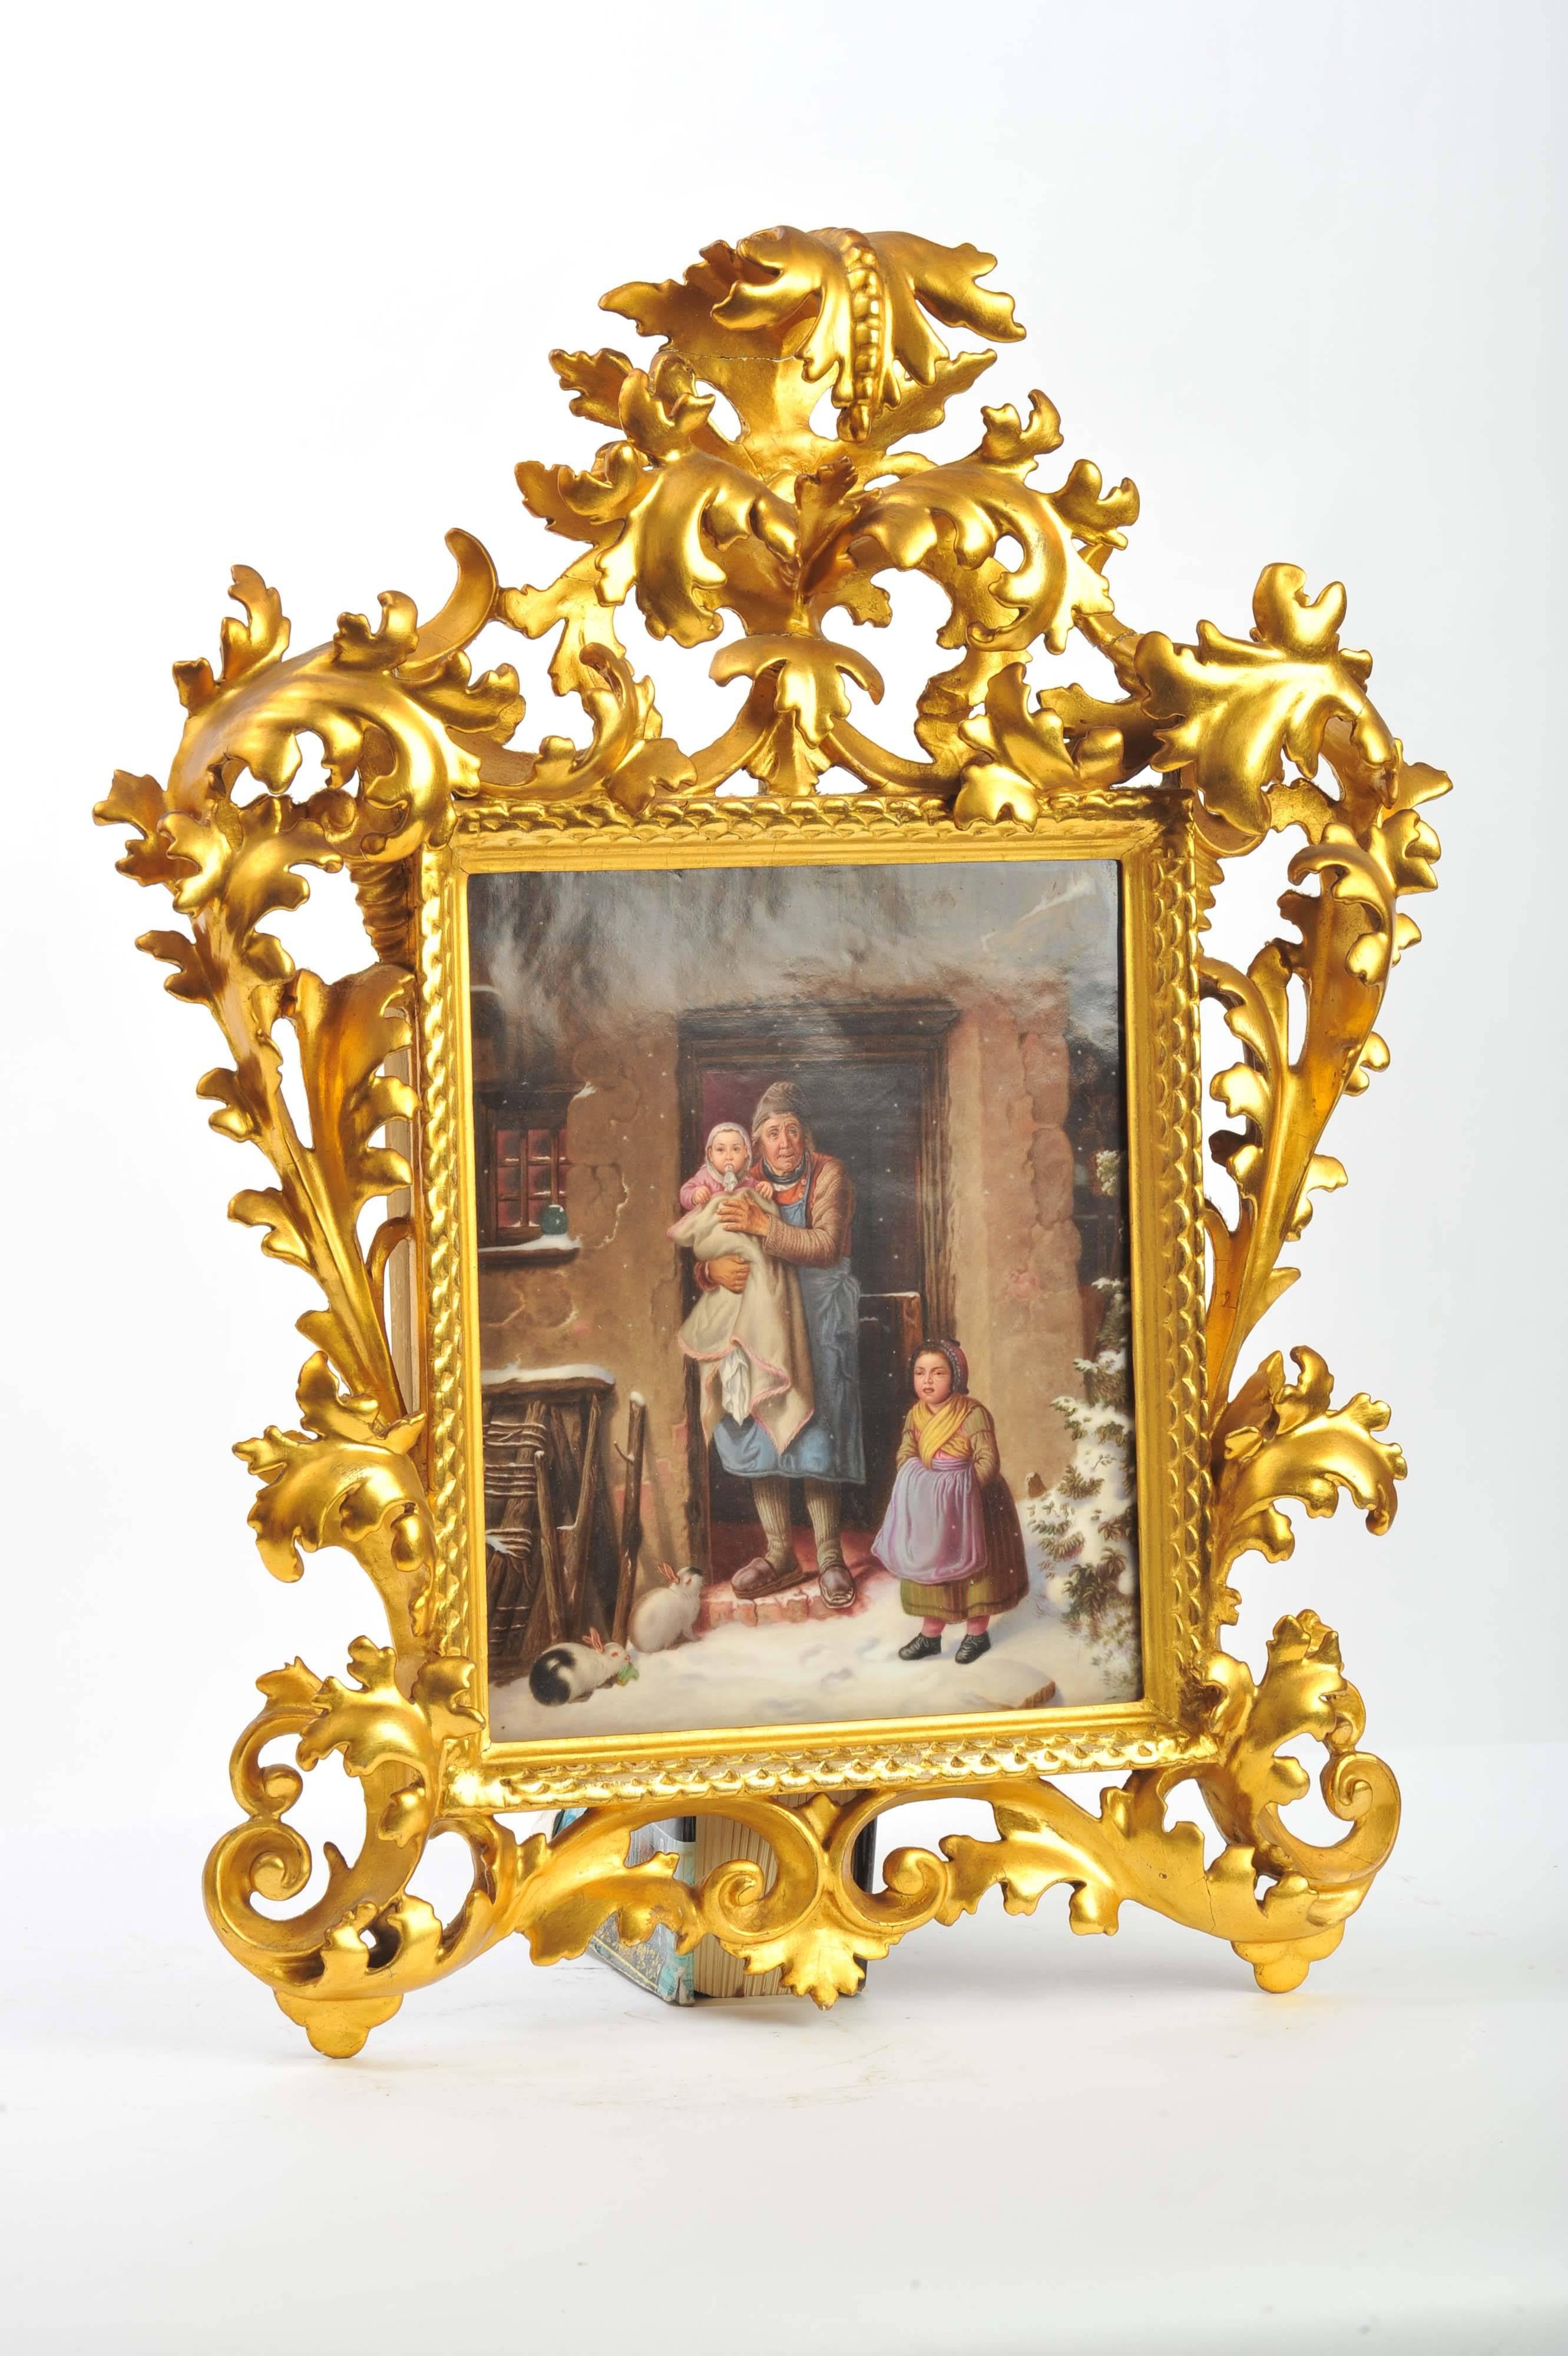 Eine KPM-Porzellanplakette guter Qualität aus dem 19. Jahrhundert, die eine Mutter und ihre Kinder an einem Wintertag zeigt.
Montiert in einem geschnitzten Florentine-Rahmen aus dem 19. Jahrhundert.